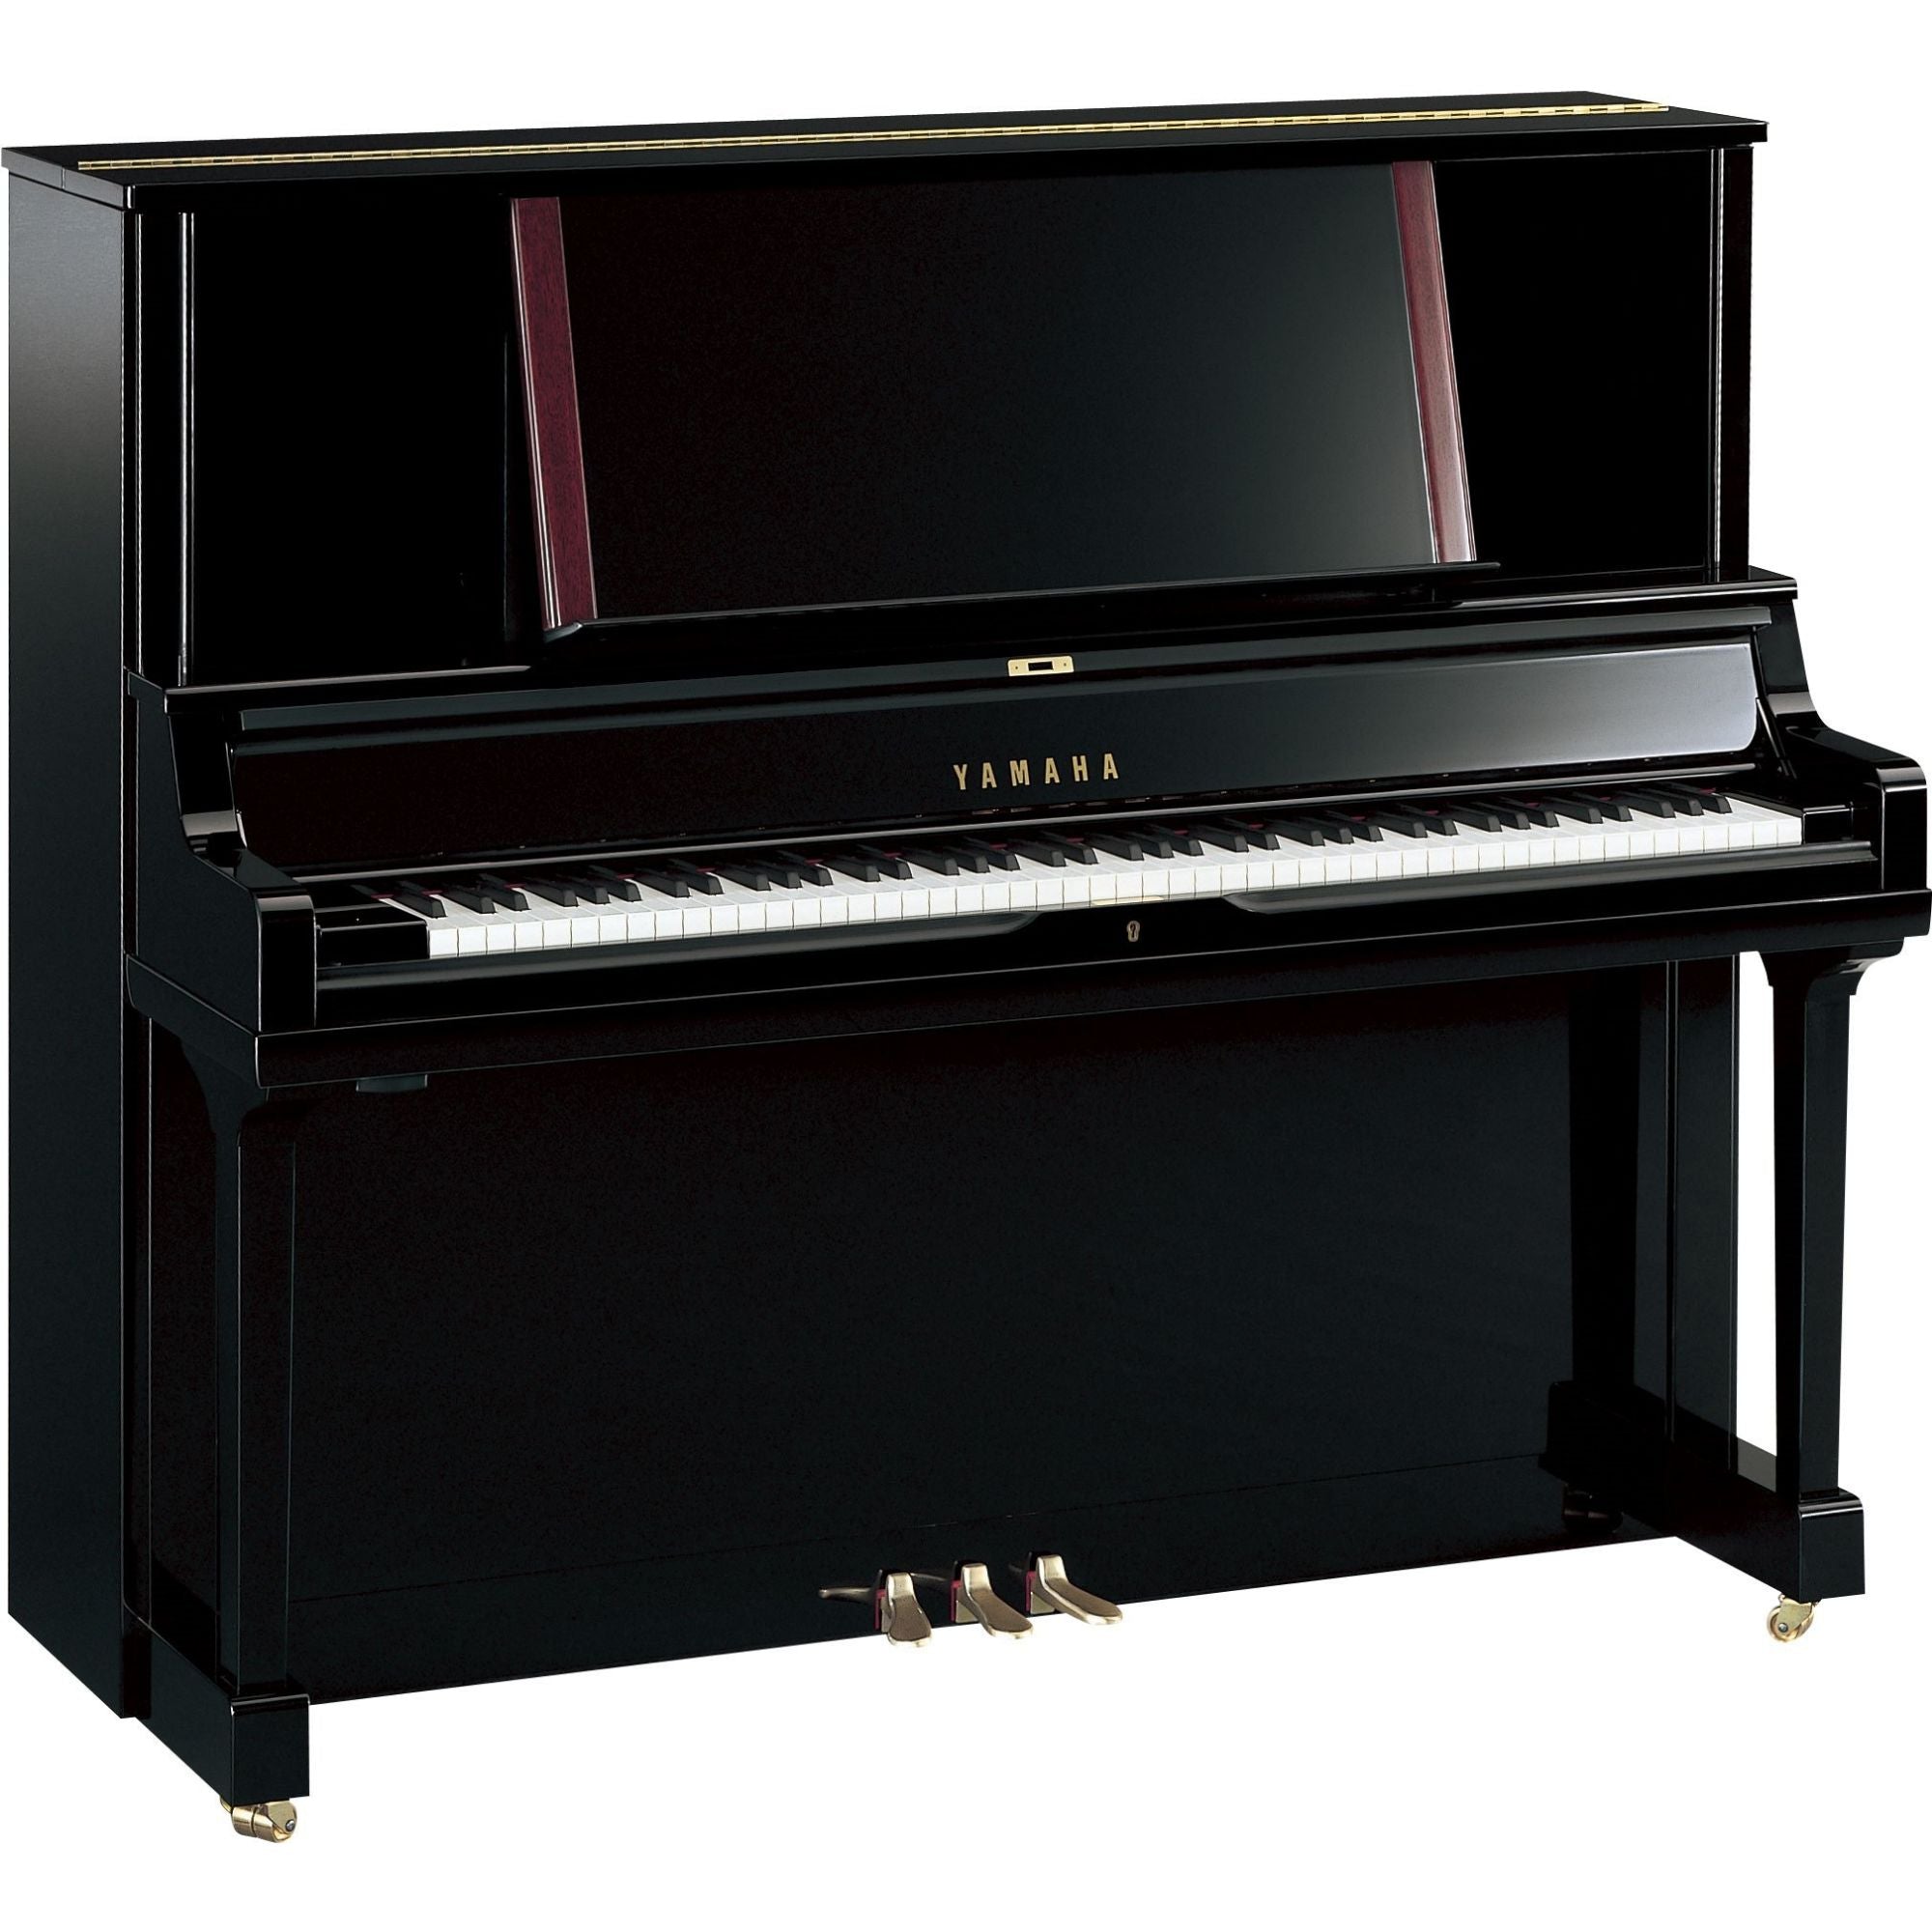 Yamaha YUS5 High Performance Upright Piano, Polished Ebony